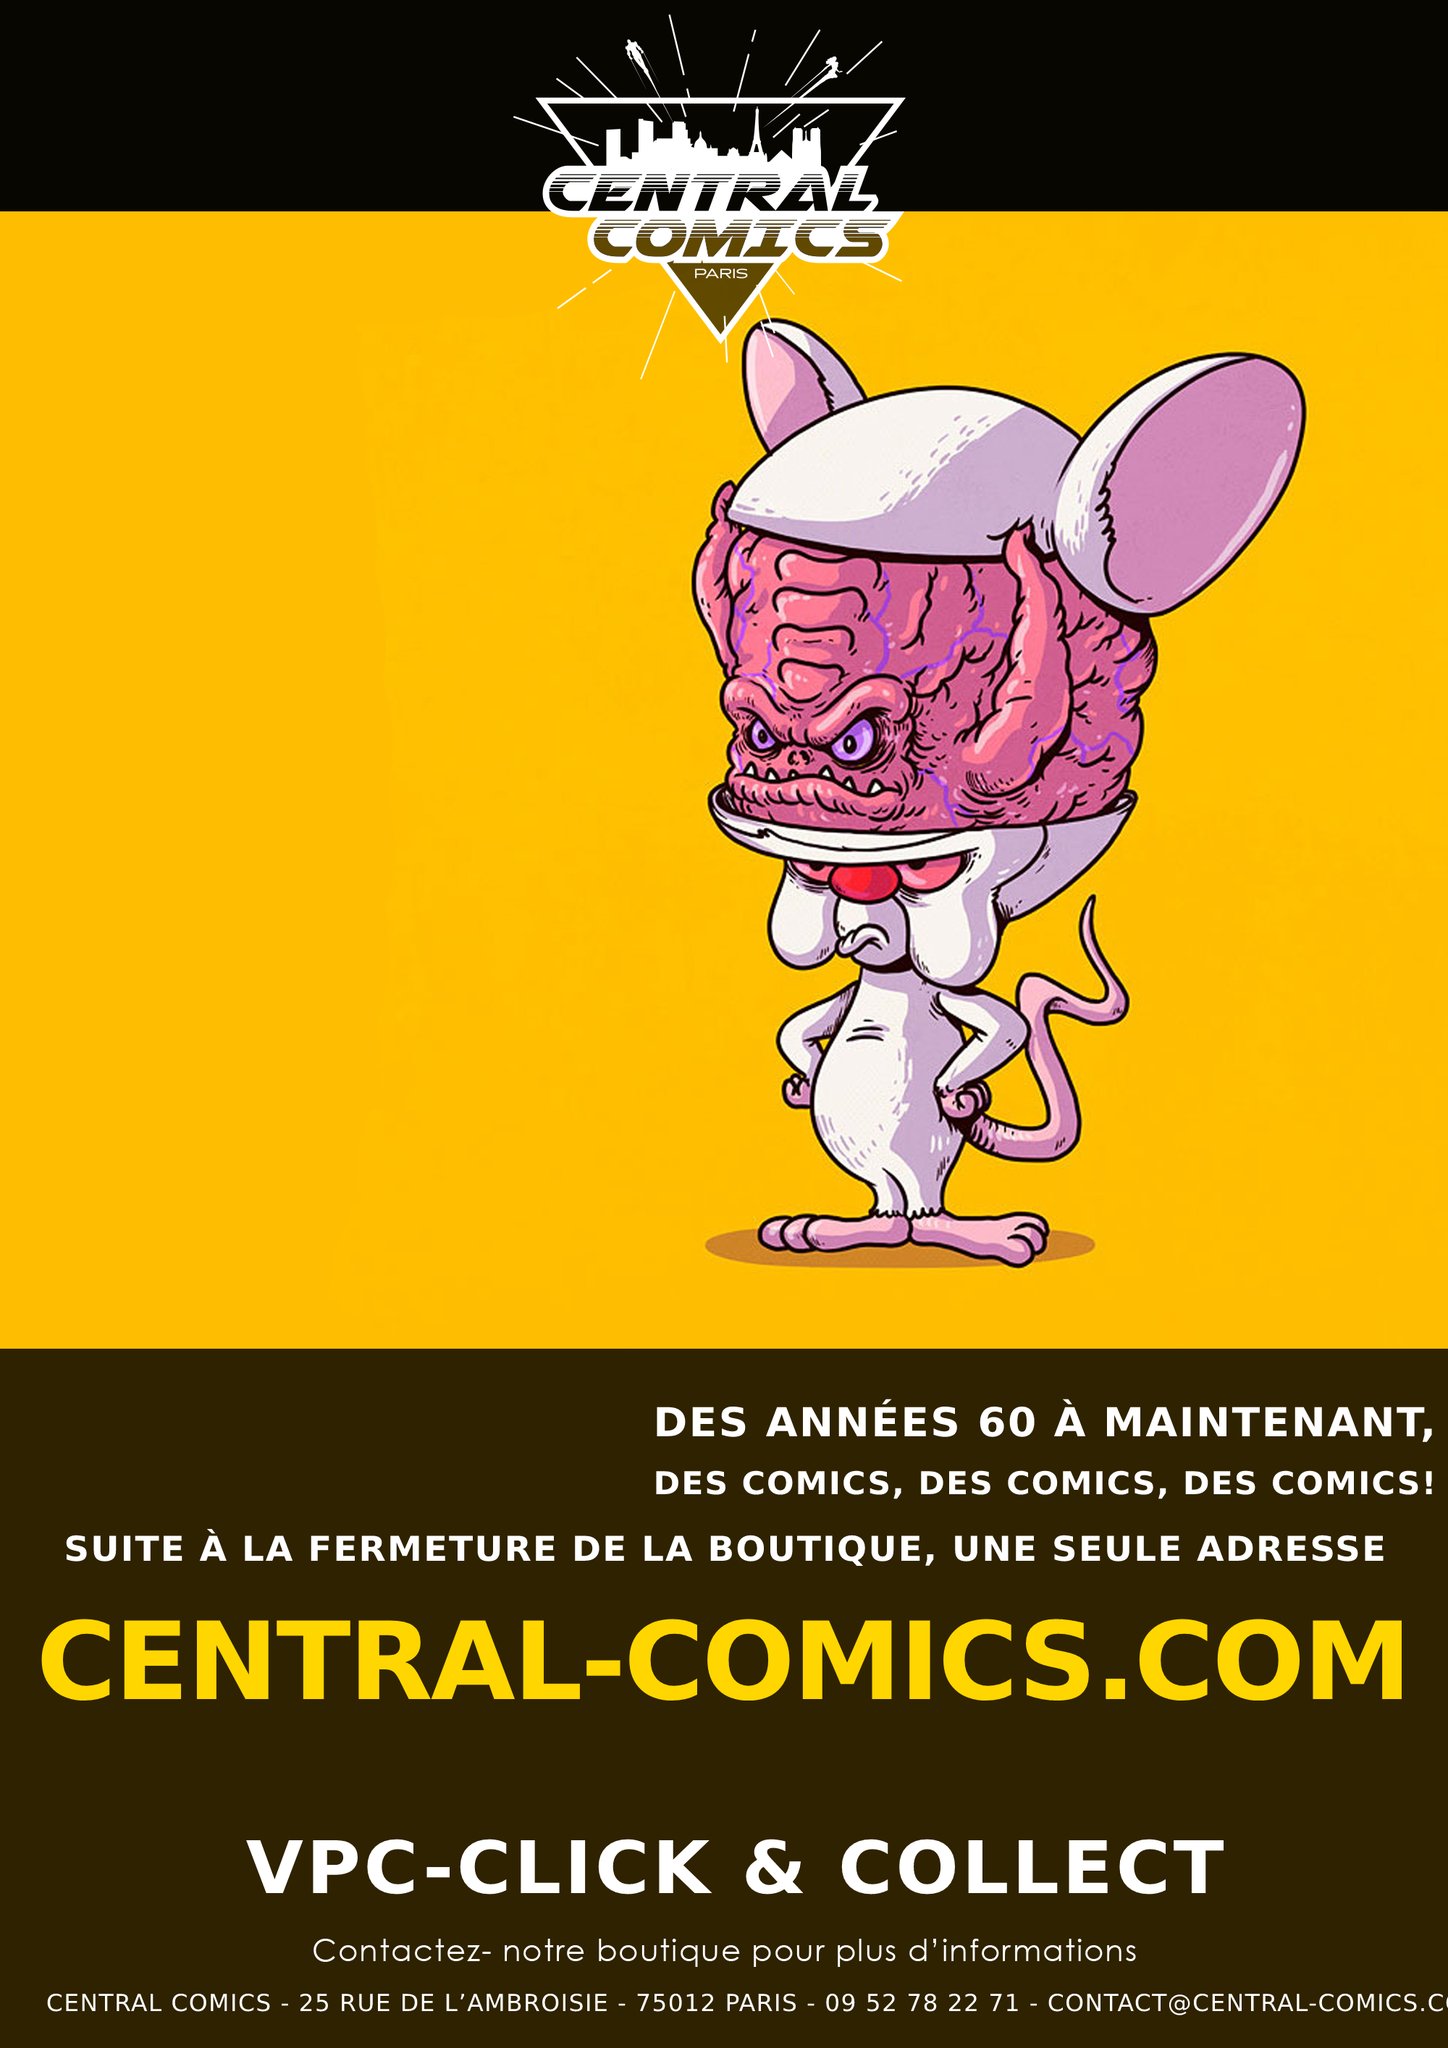 Central Comics Paris Comic Store: FCBD 2018 - 4 jours de folie